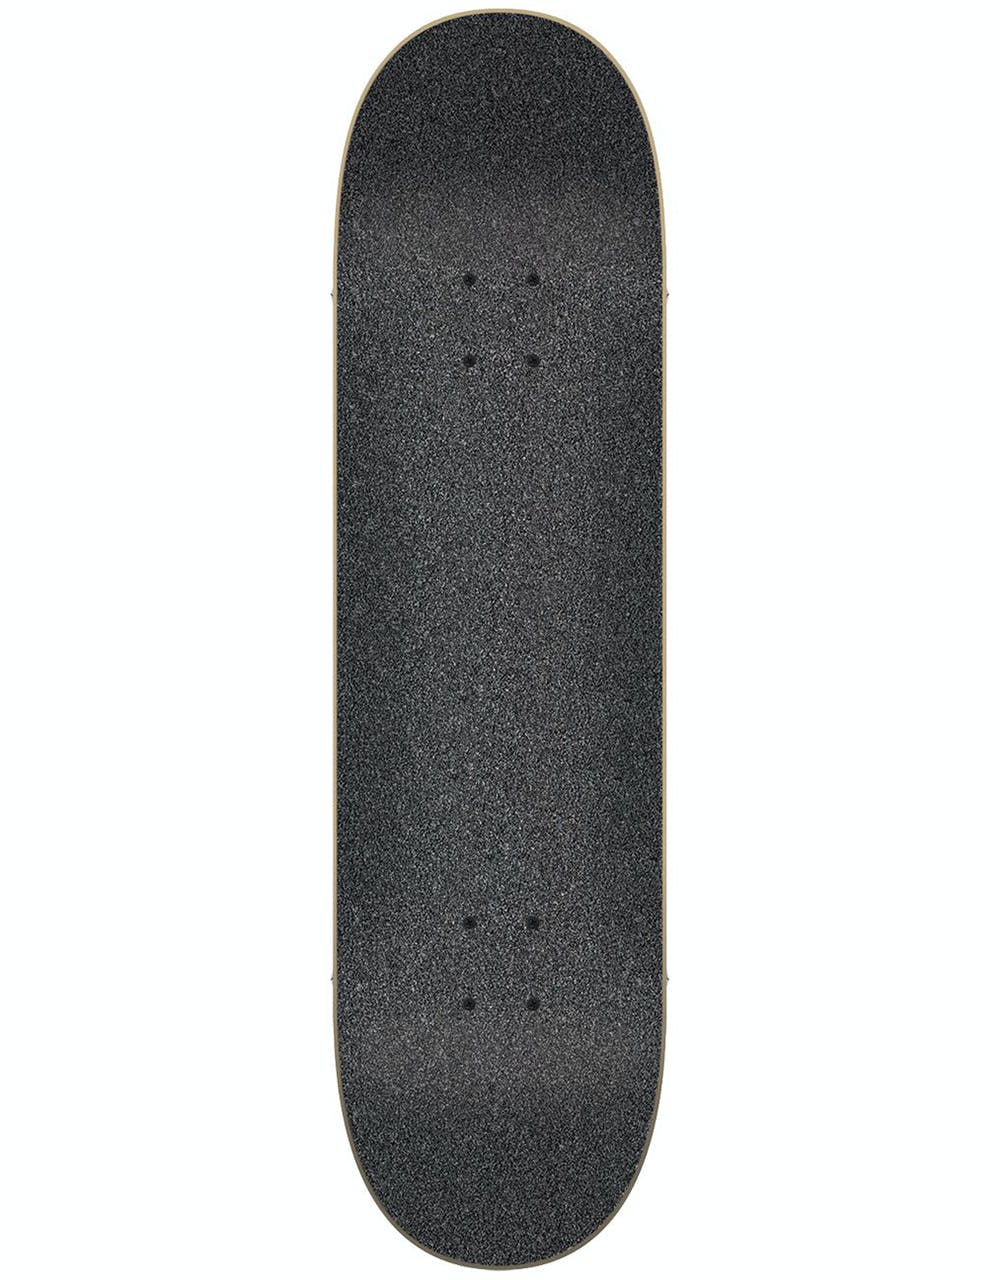 Flip HKD Tie Dye Mini Complete Skateboard - 7.5"